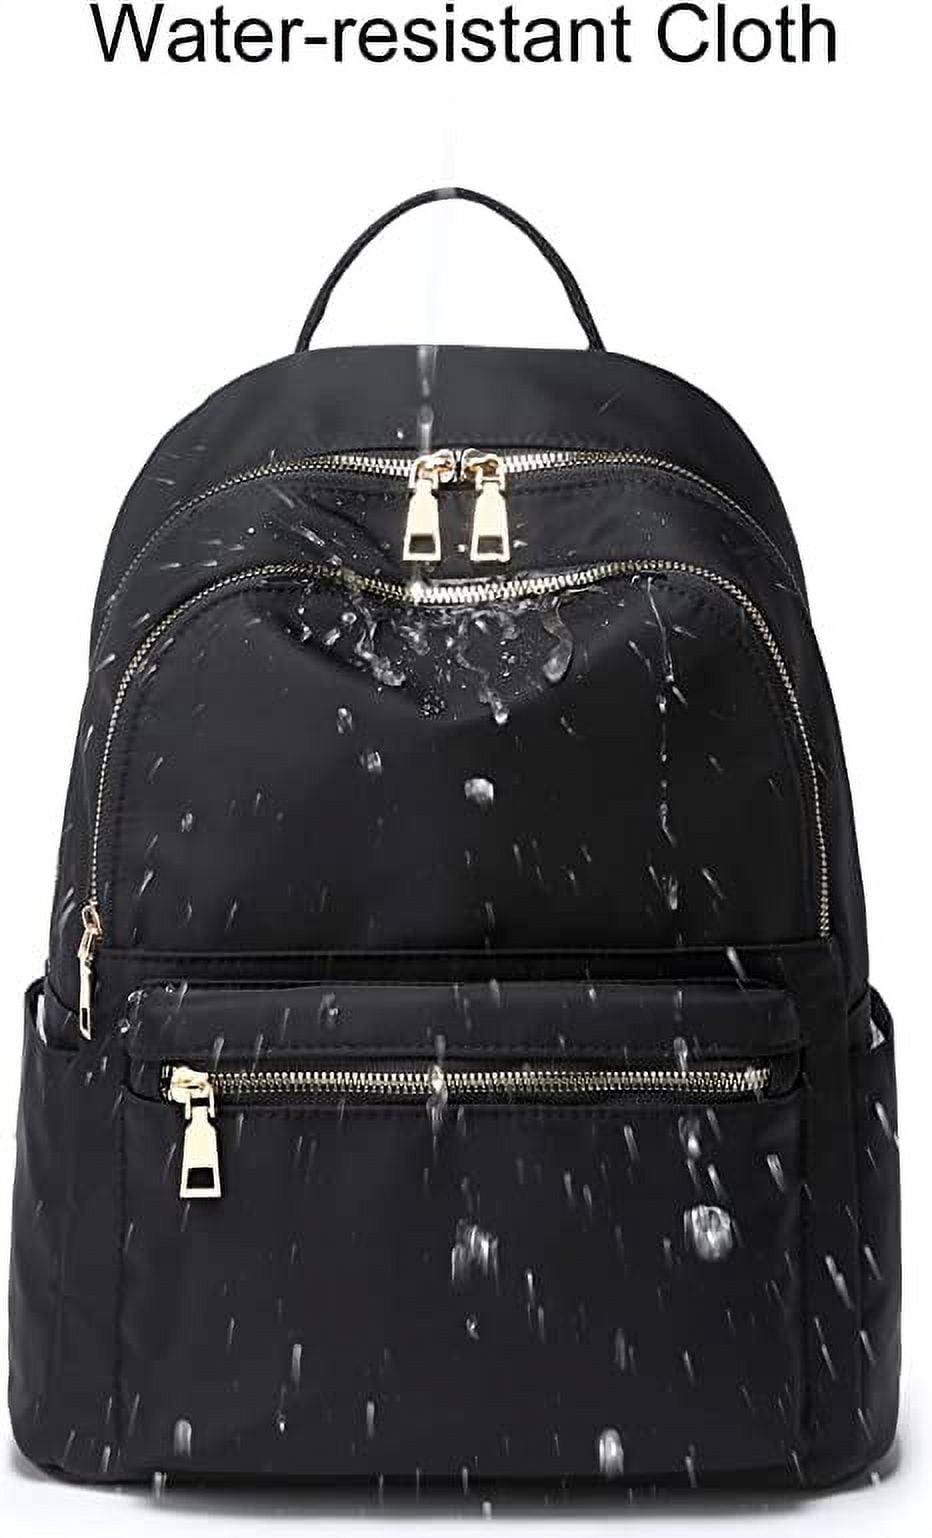 FOYEA Women Girl Nylon Mini Backpack Purse Small Backpack Shoulder Rucksack Travel Bag, Women's, Black